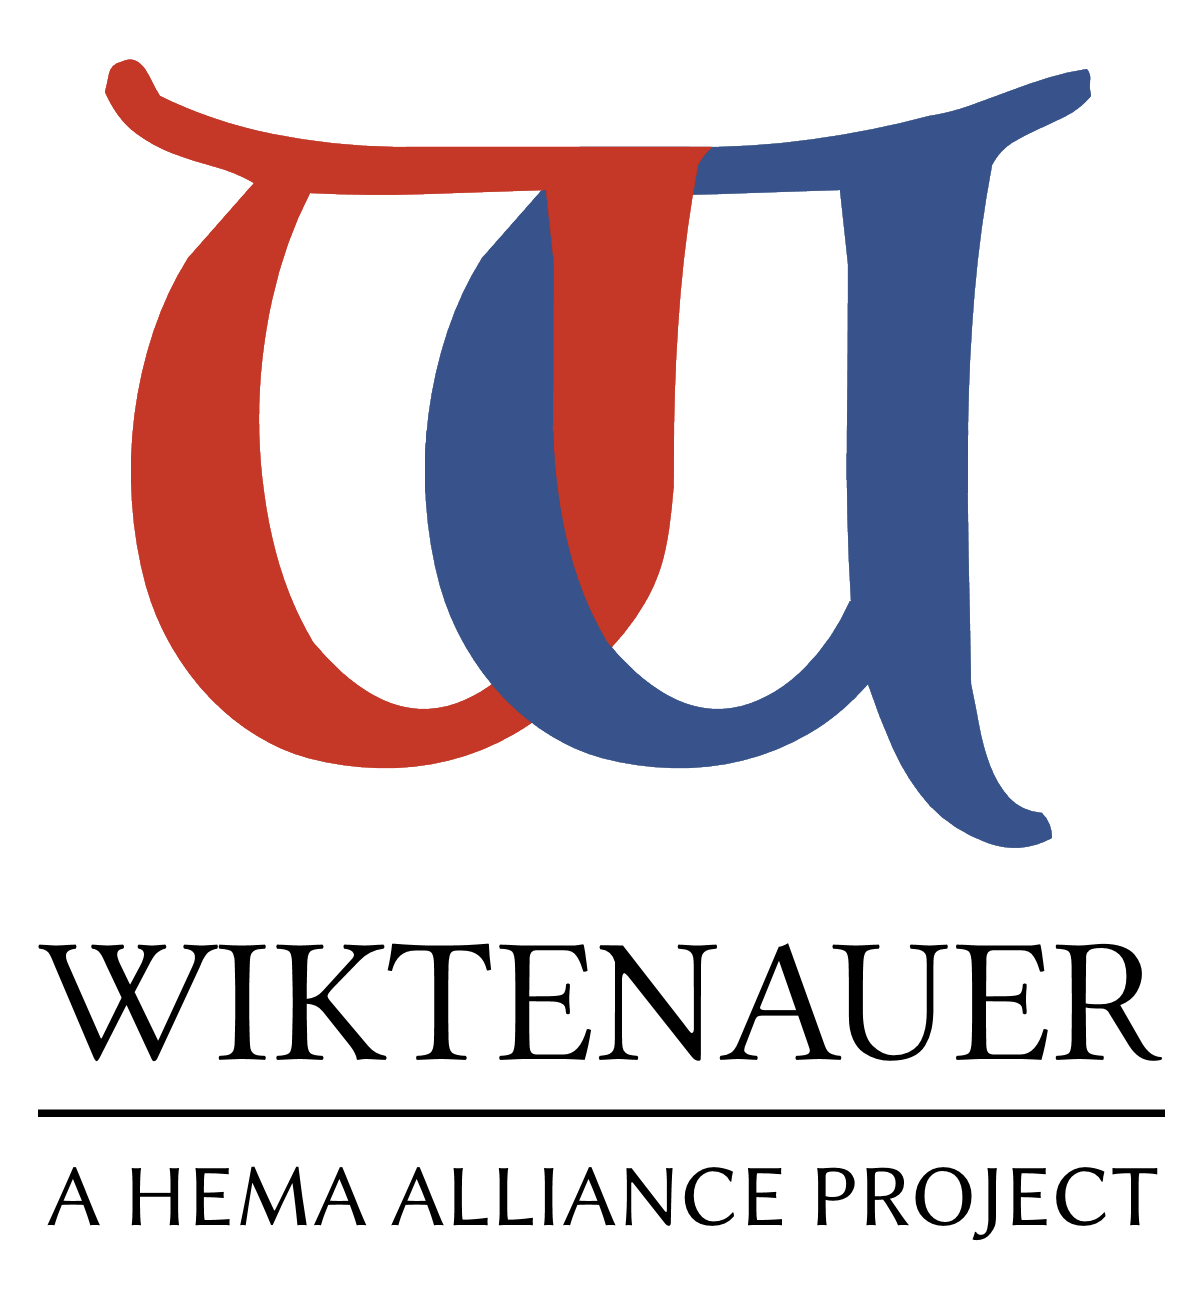 Wiktenauer logo.png